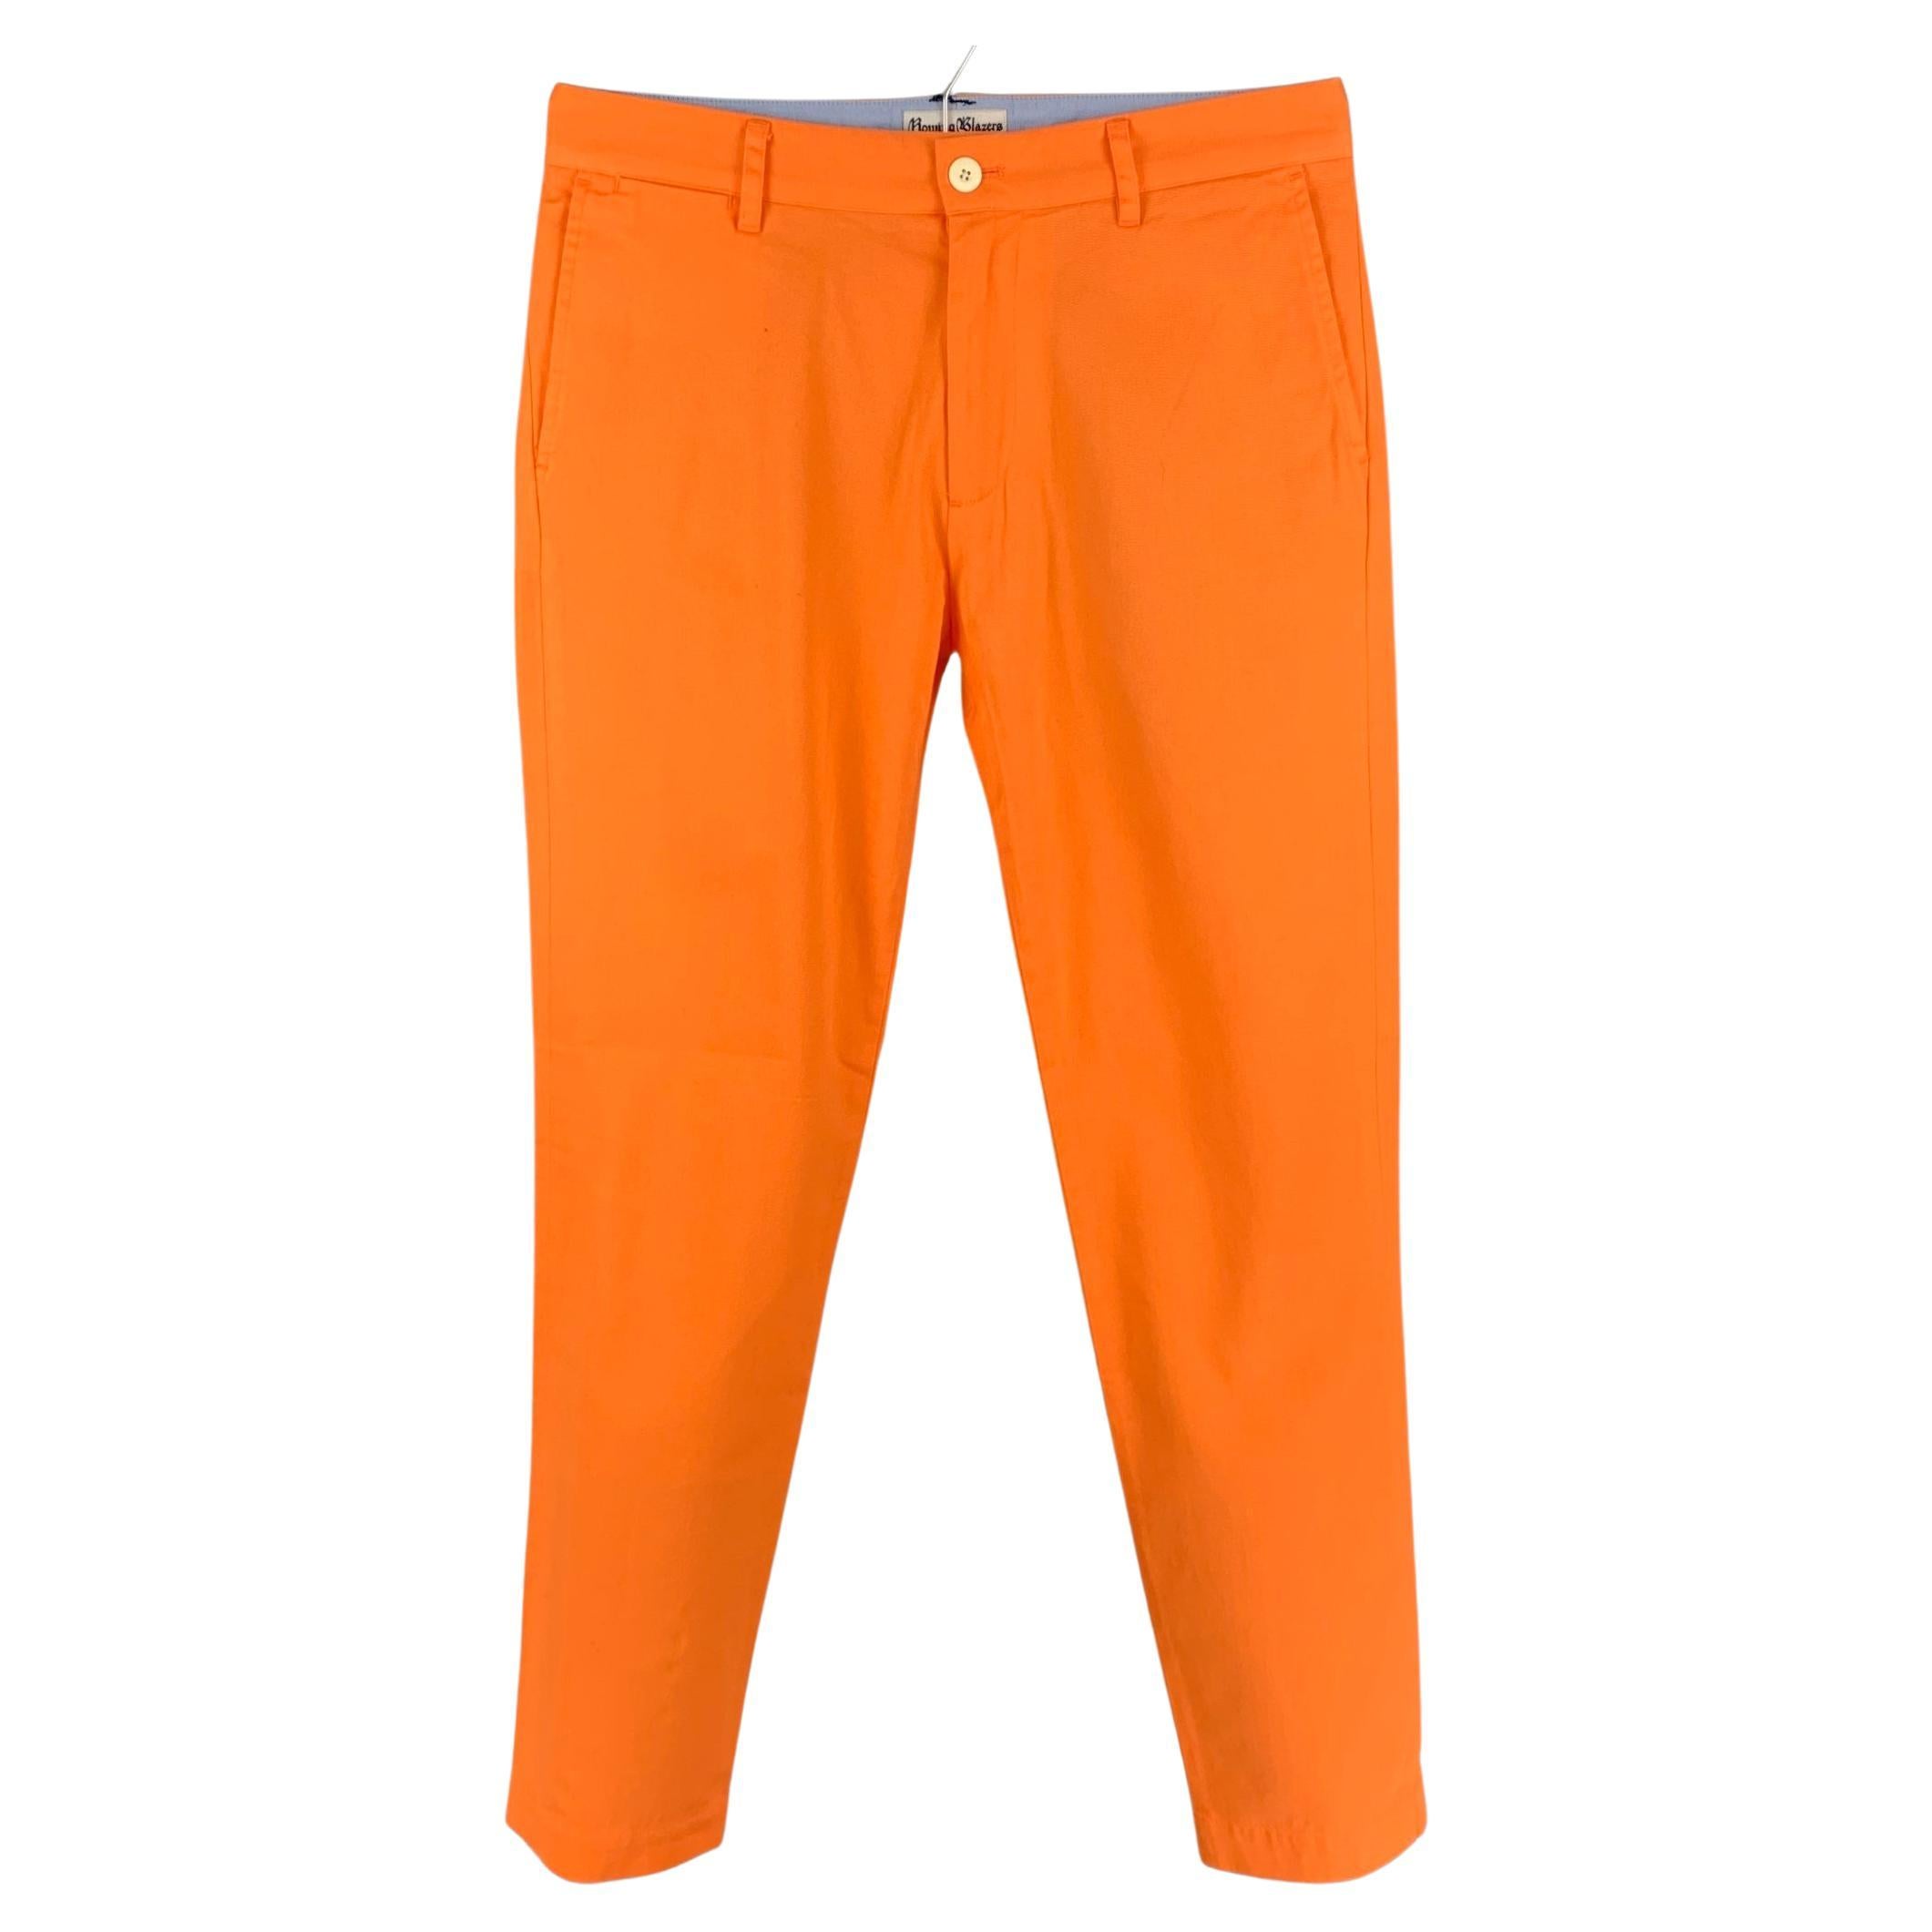 Men's Orange Pants | Nordstrom